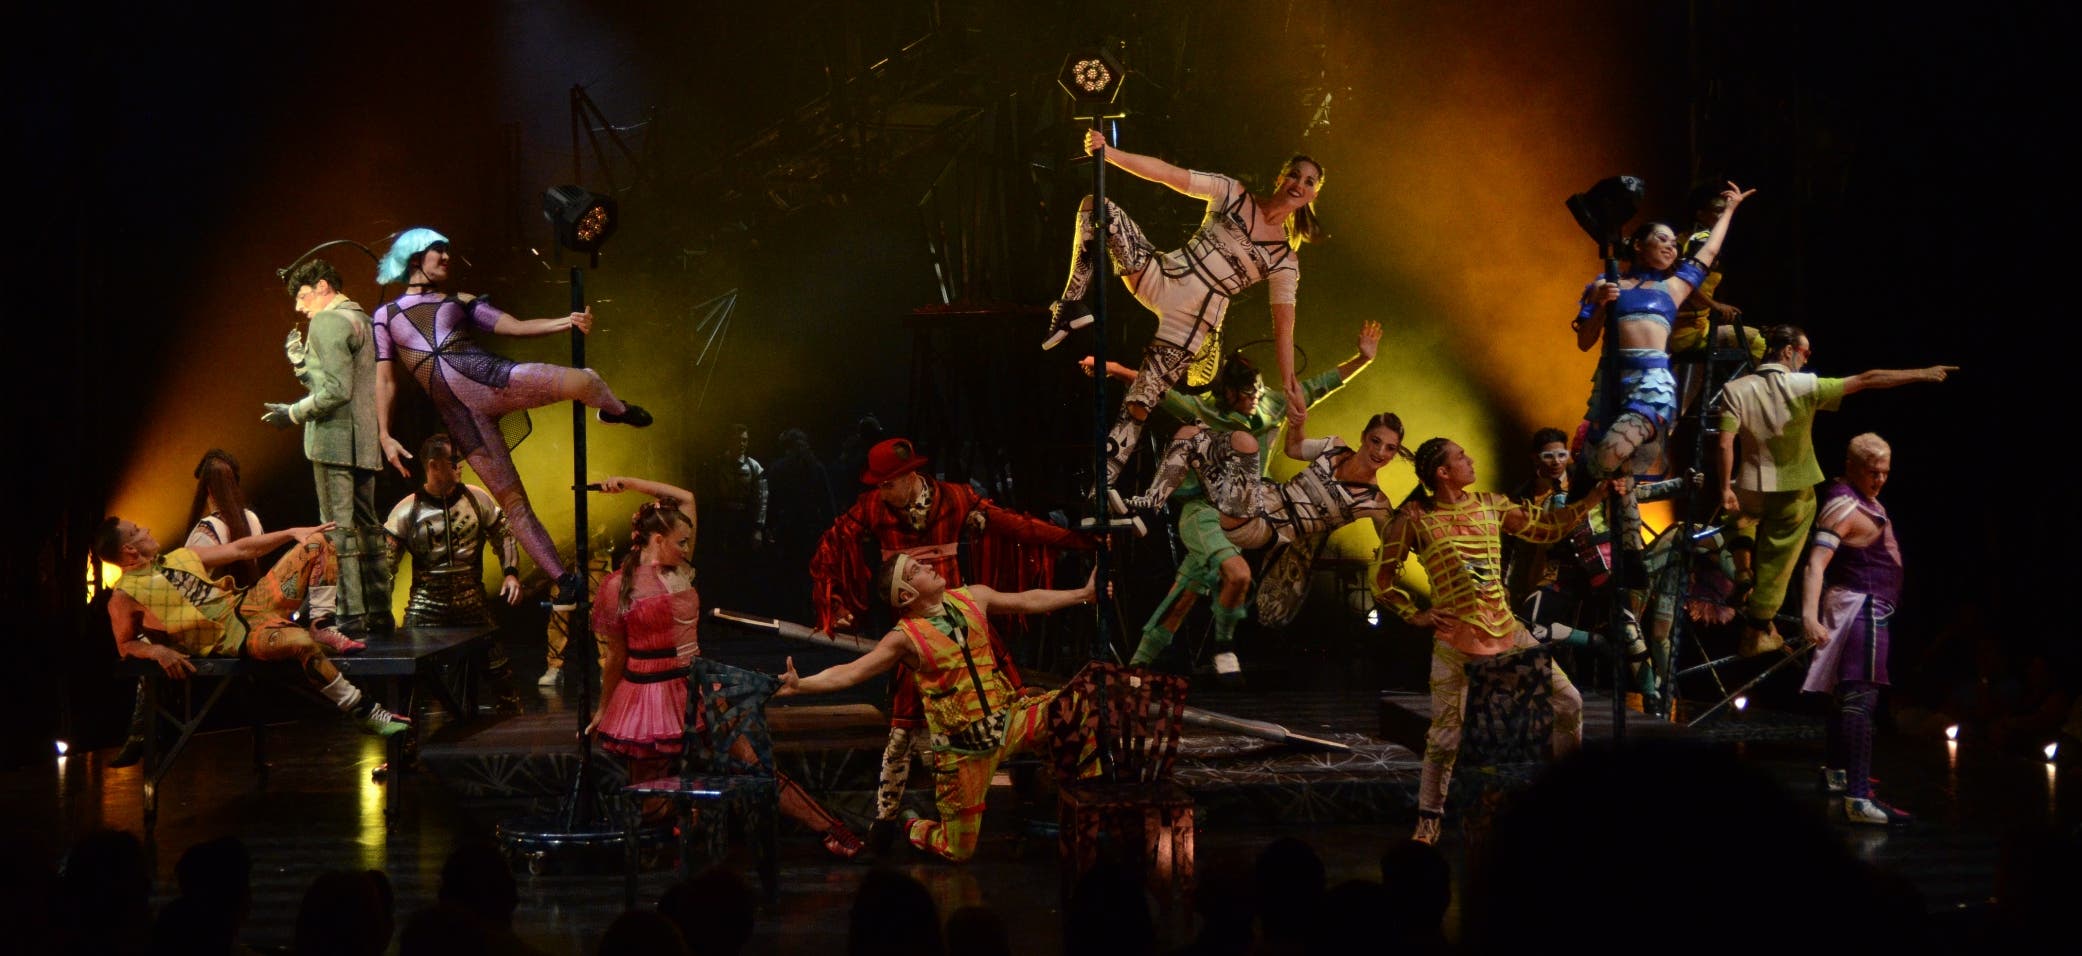 Emoción y nervios en espectáculo Cirque du Soleil